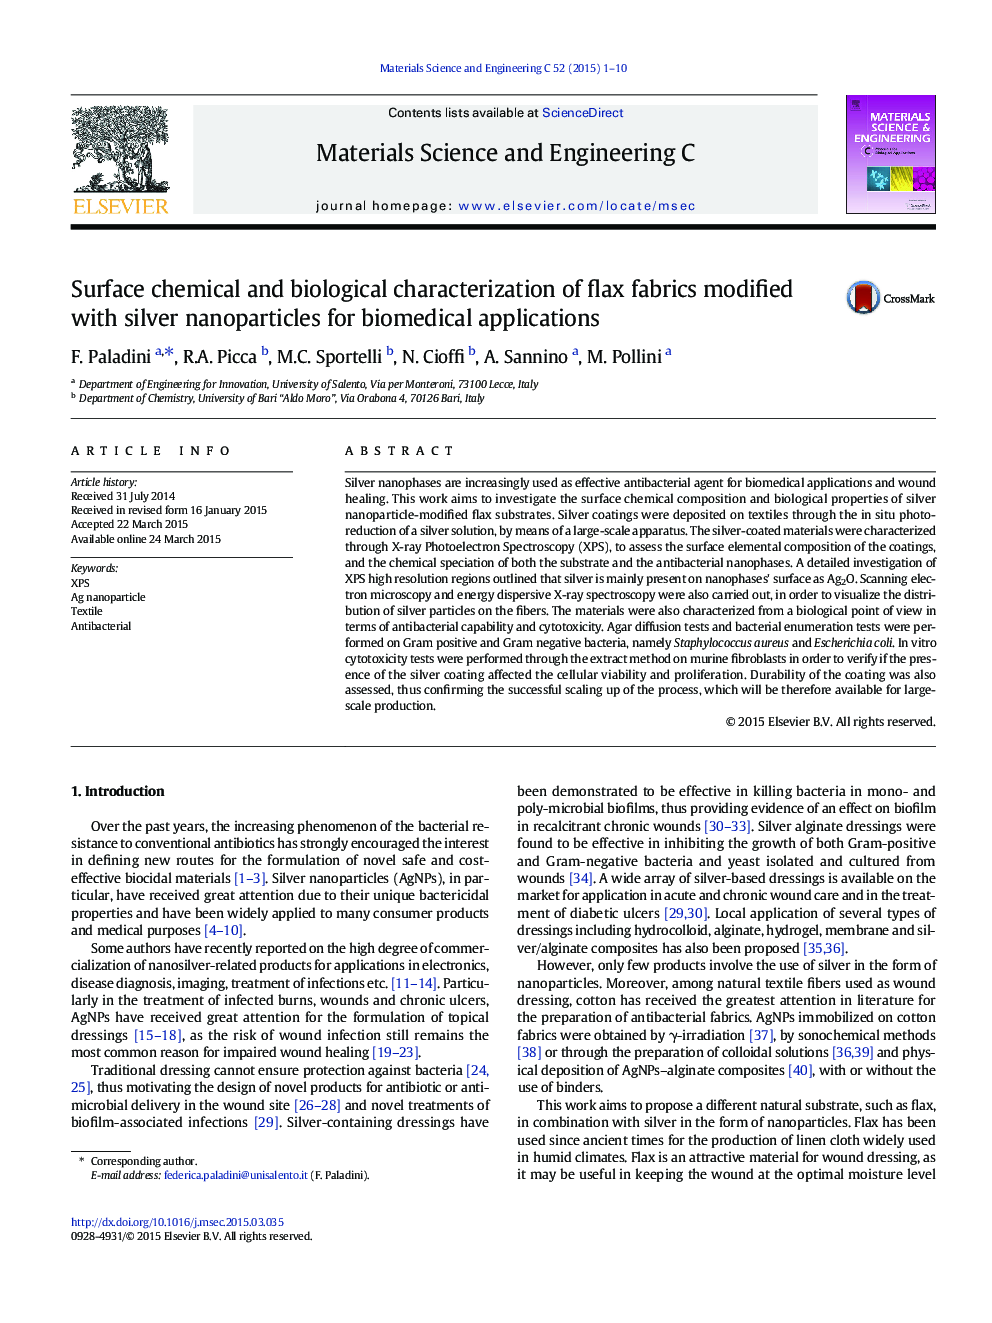 خصوصیات شیمیایی و بیولوژیکی سطحی پارچه های کتانی اصلاح شده با نانوذرات نقره برای کاربردهای بیومدیکال 